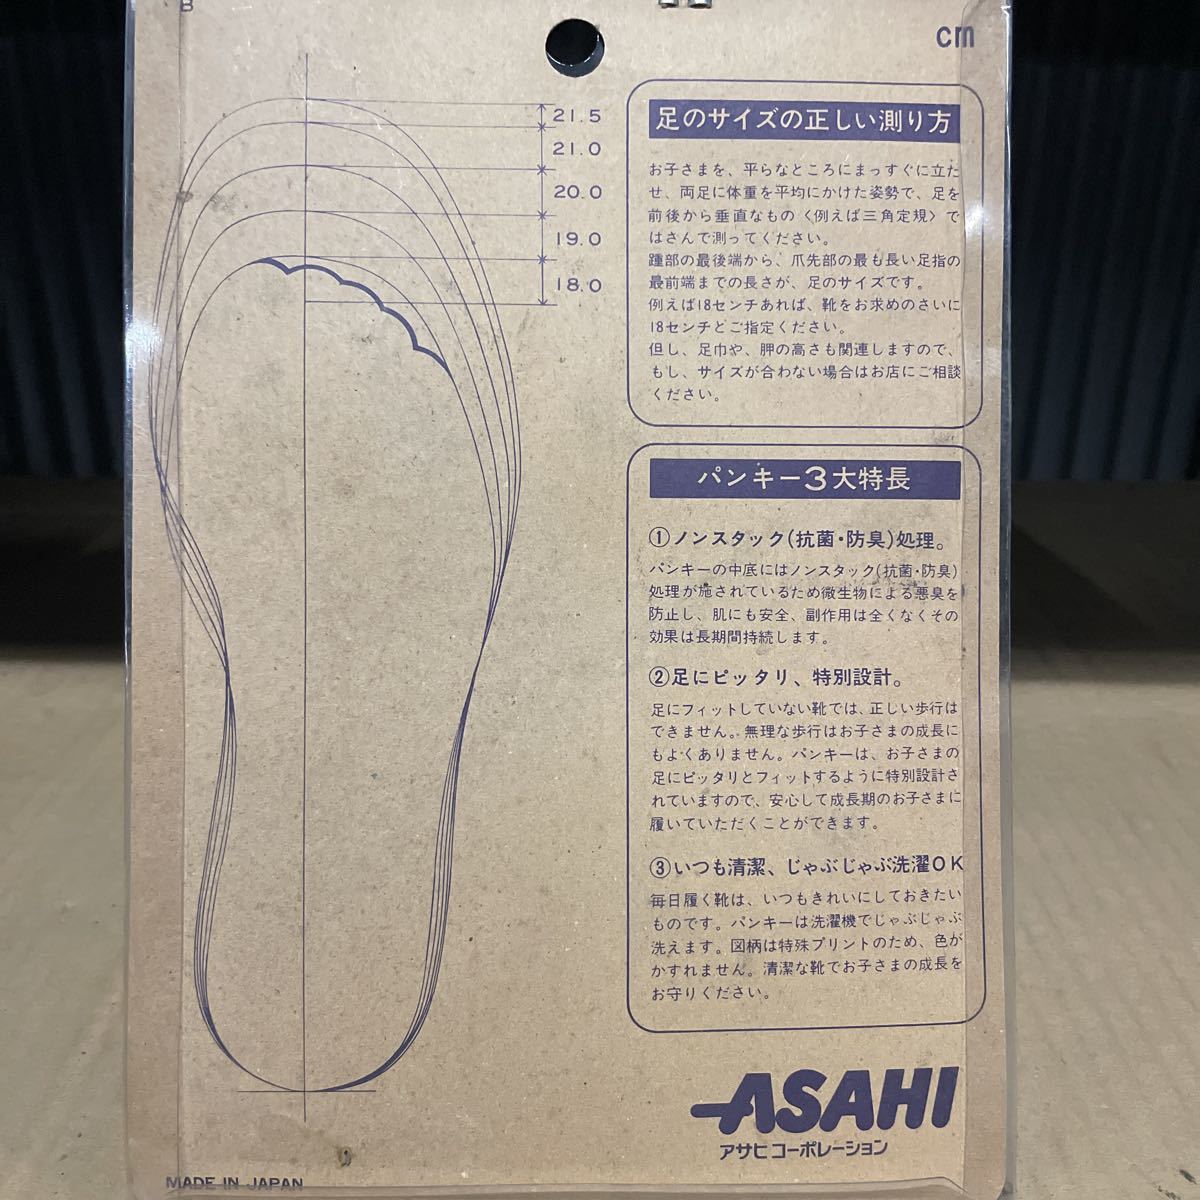  Asahi молния супер человек g крышка man ребенок обувь 19.0